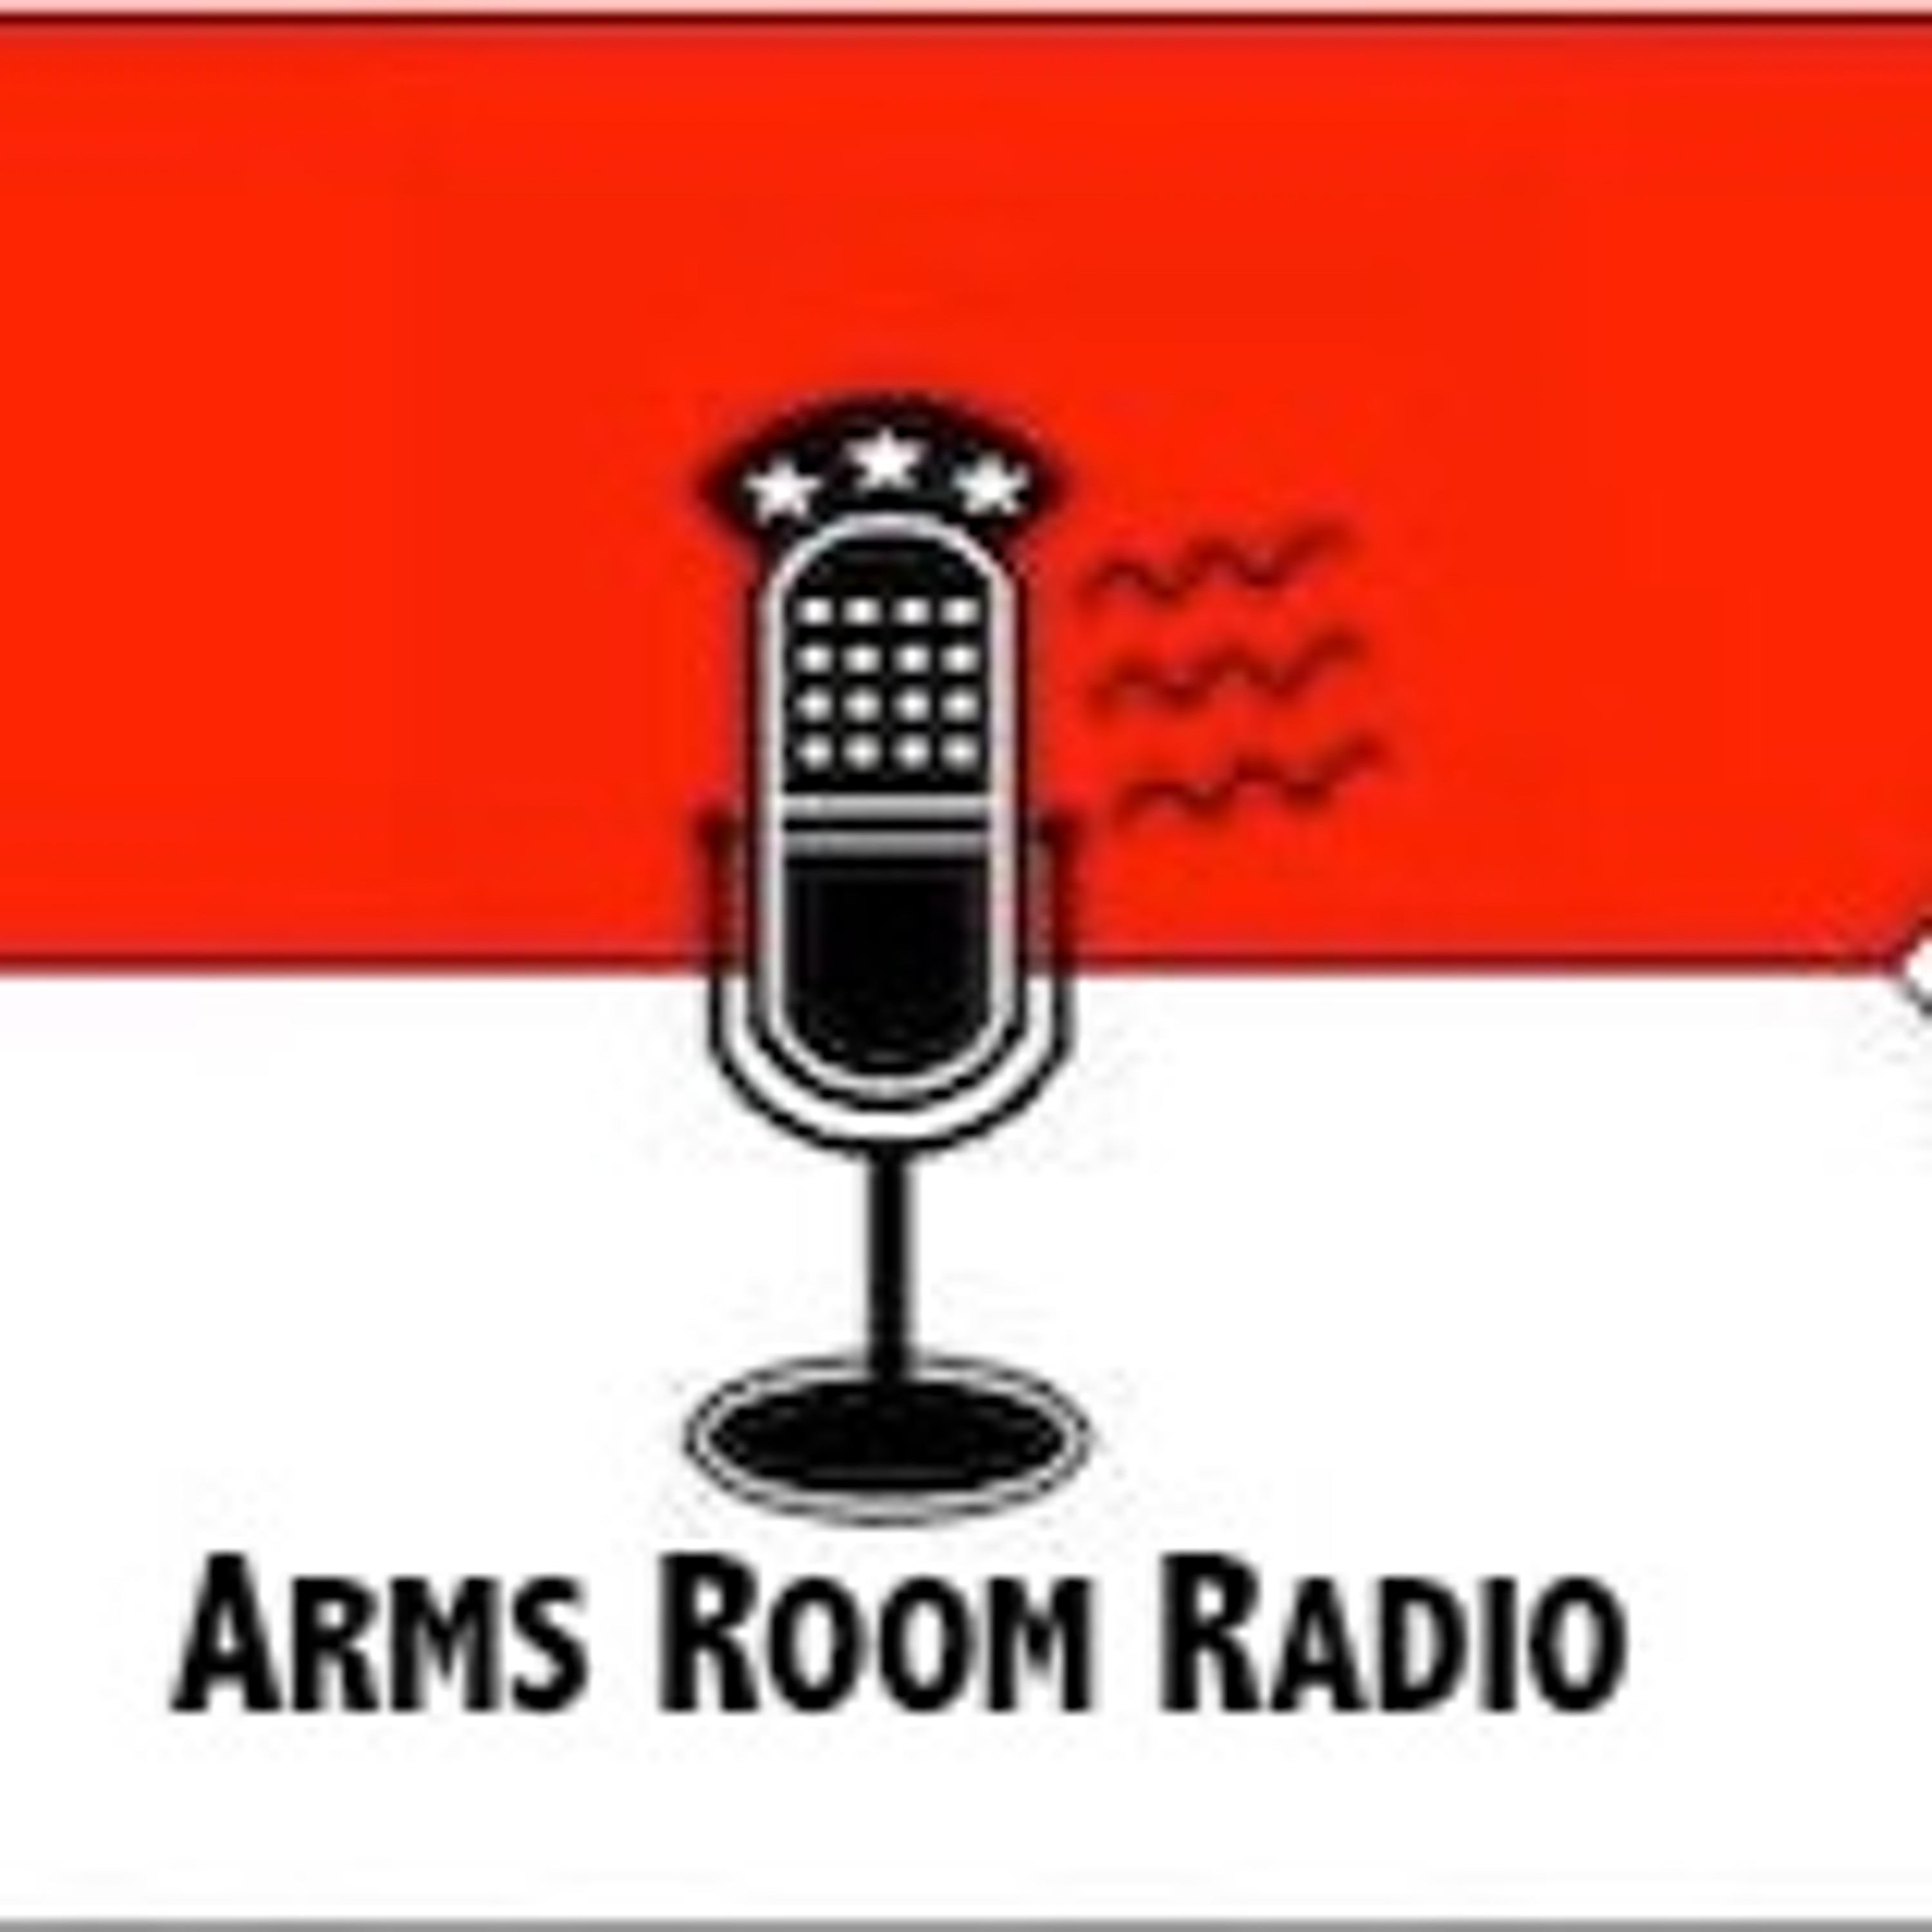 ArmsRoomRadio 07.31.21 Senator smack down and pointing fake guns